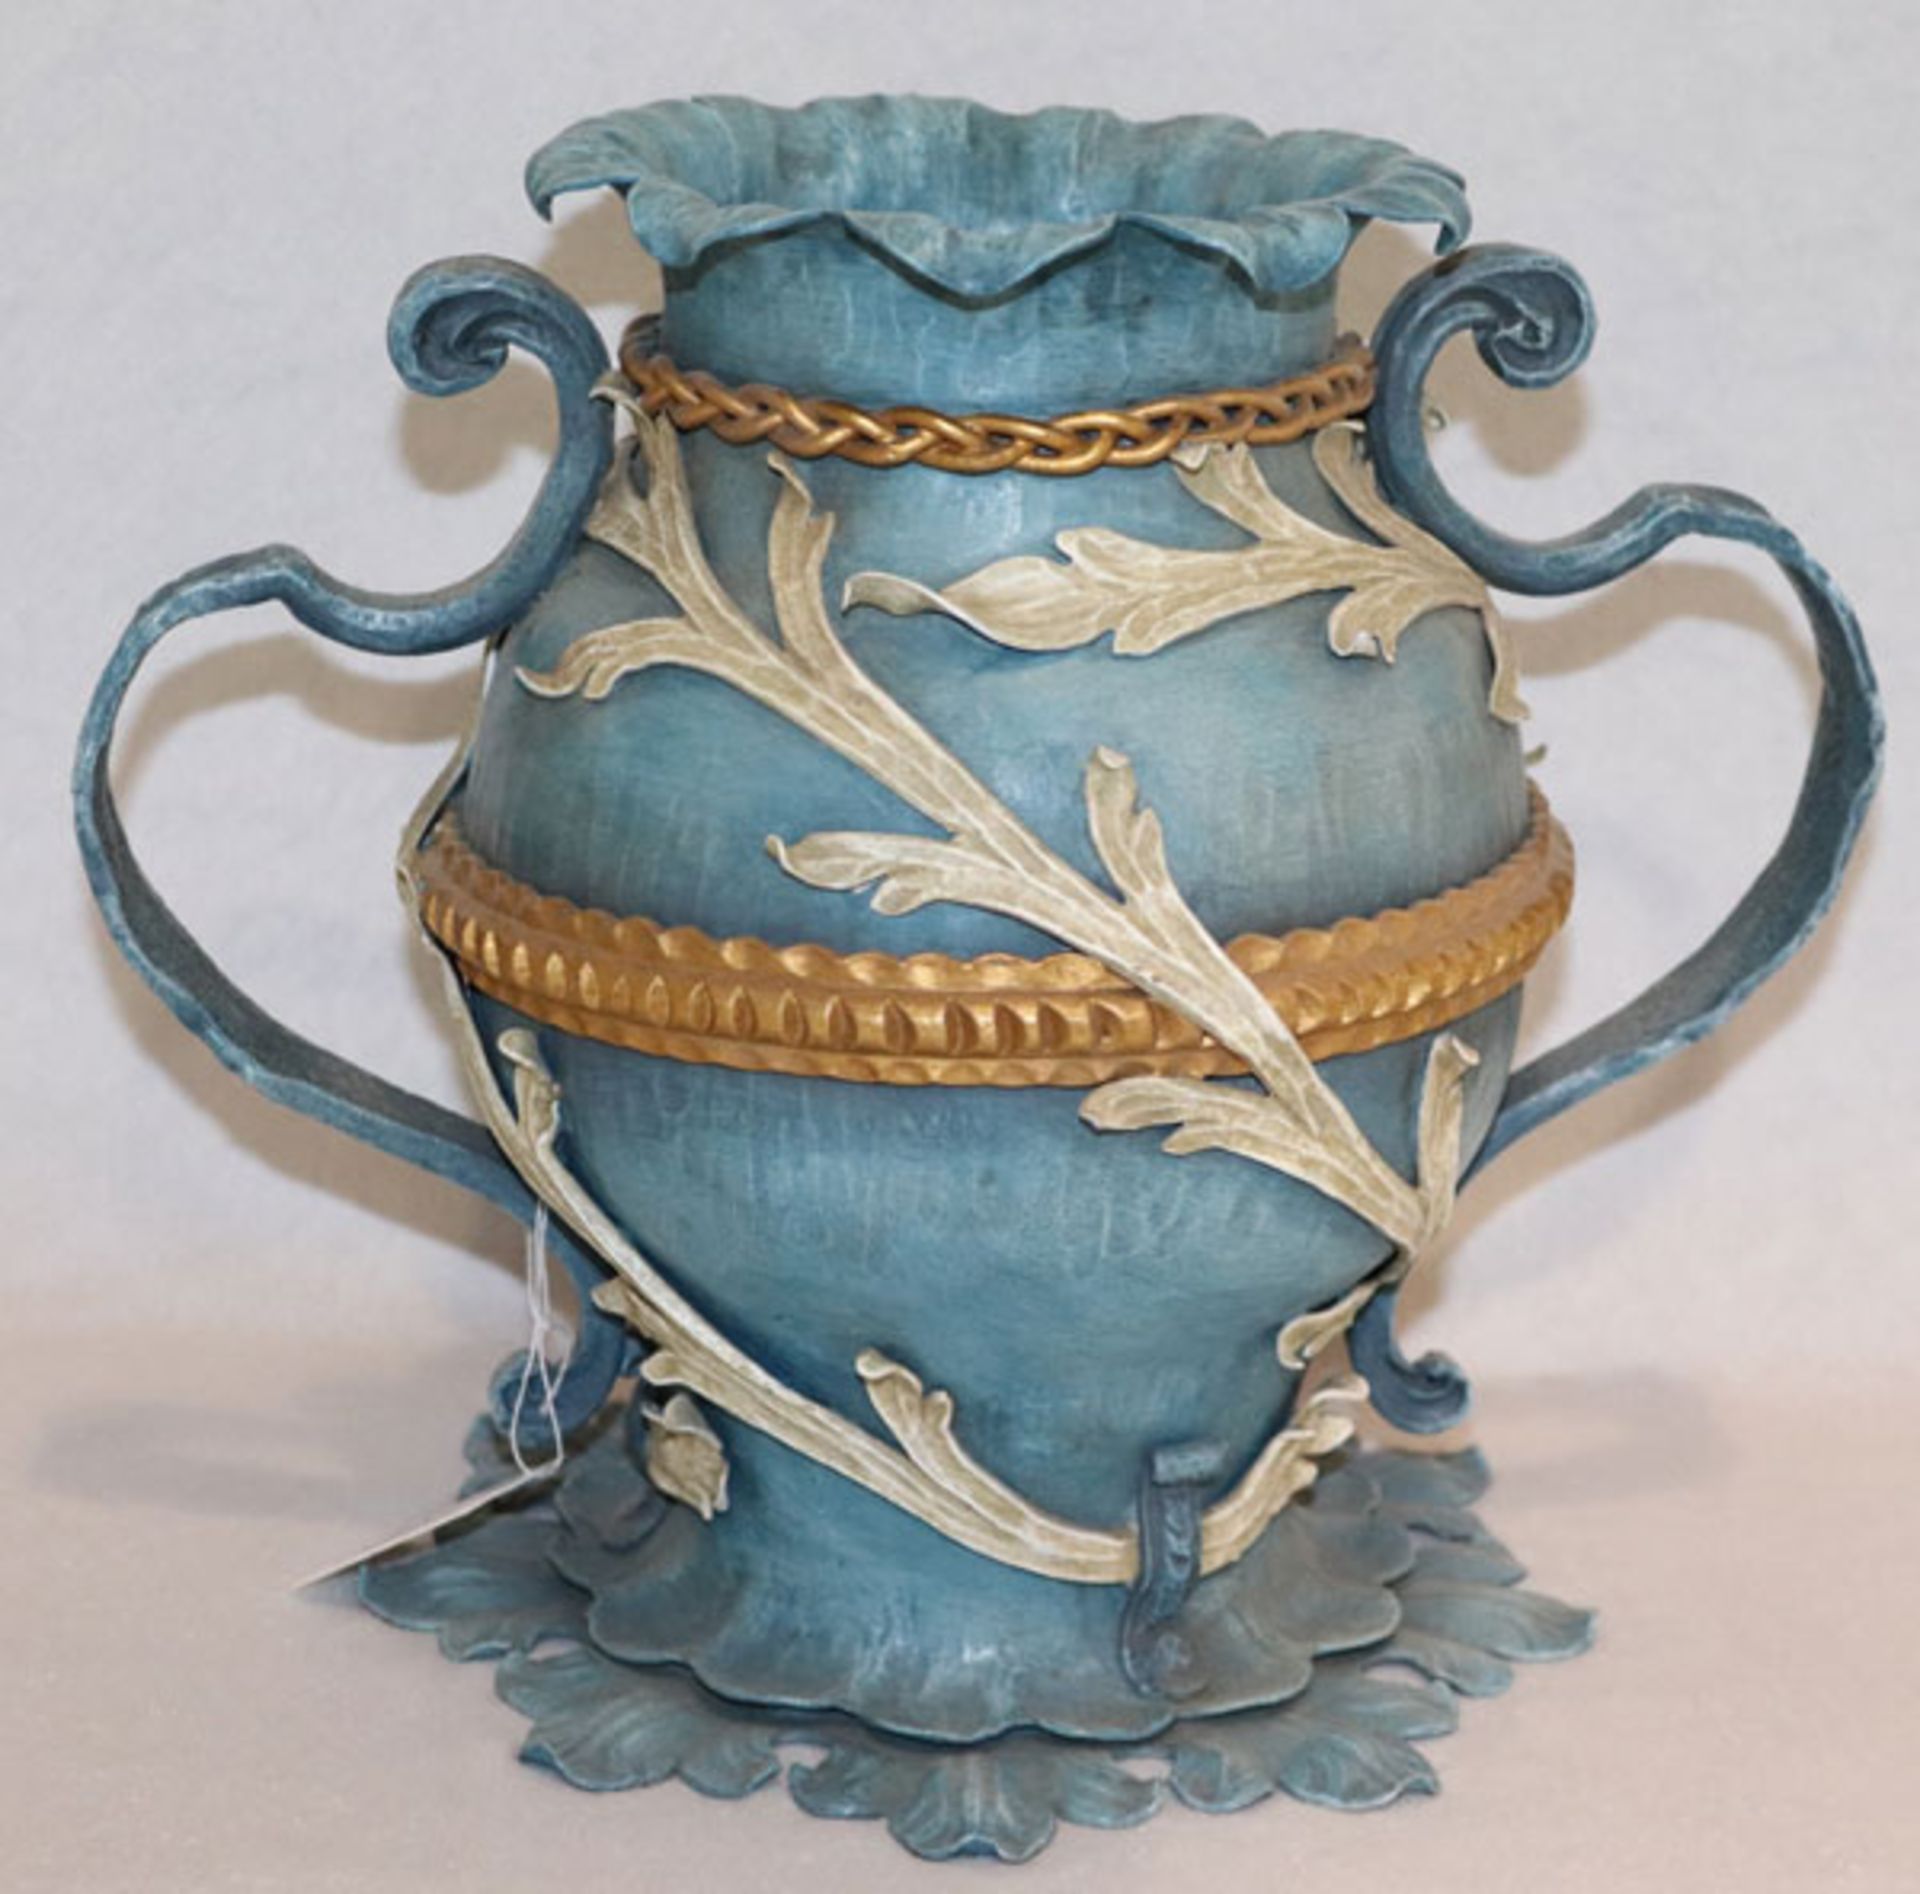 Metall Vase mit 2 seitlichen Henkeln, plastisches Blattdekor, blau/gold/beige, H 25 cm, B 31 cm, T